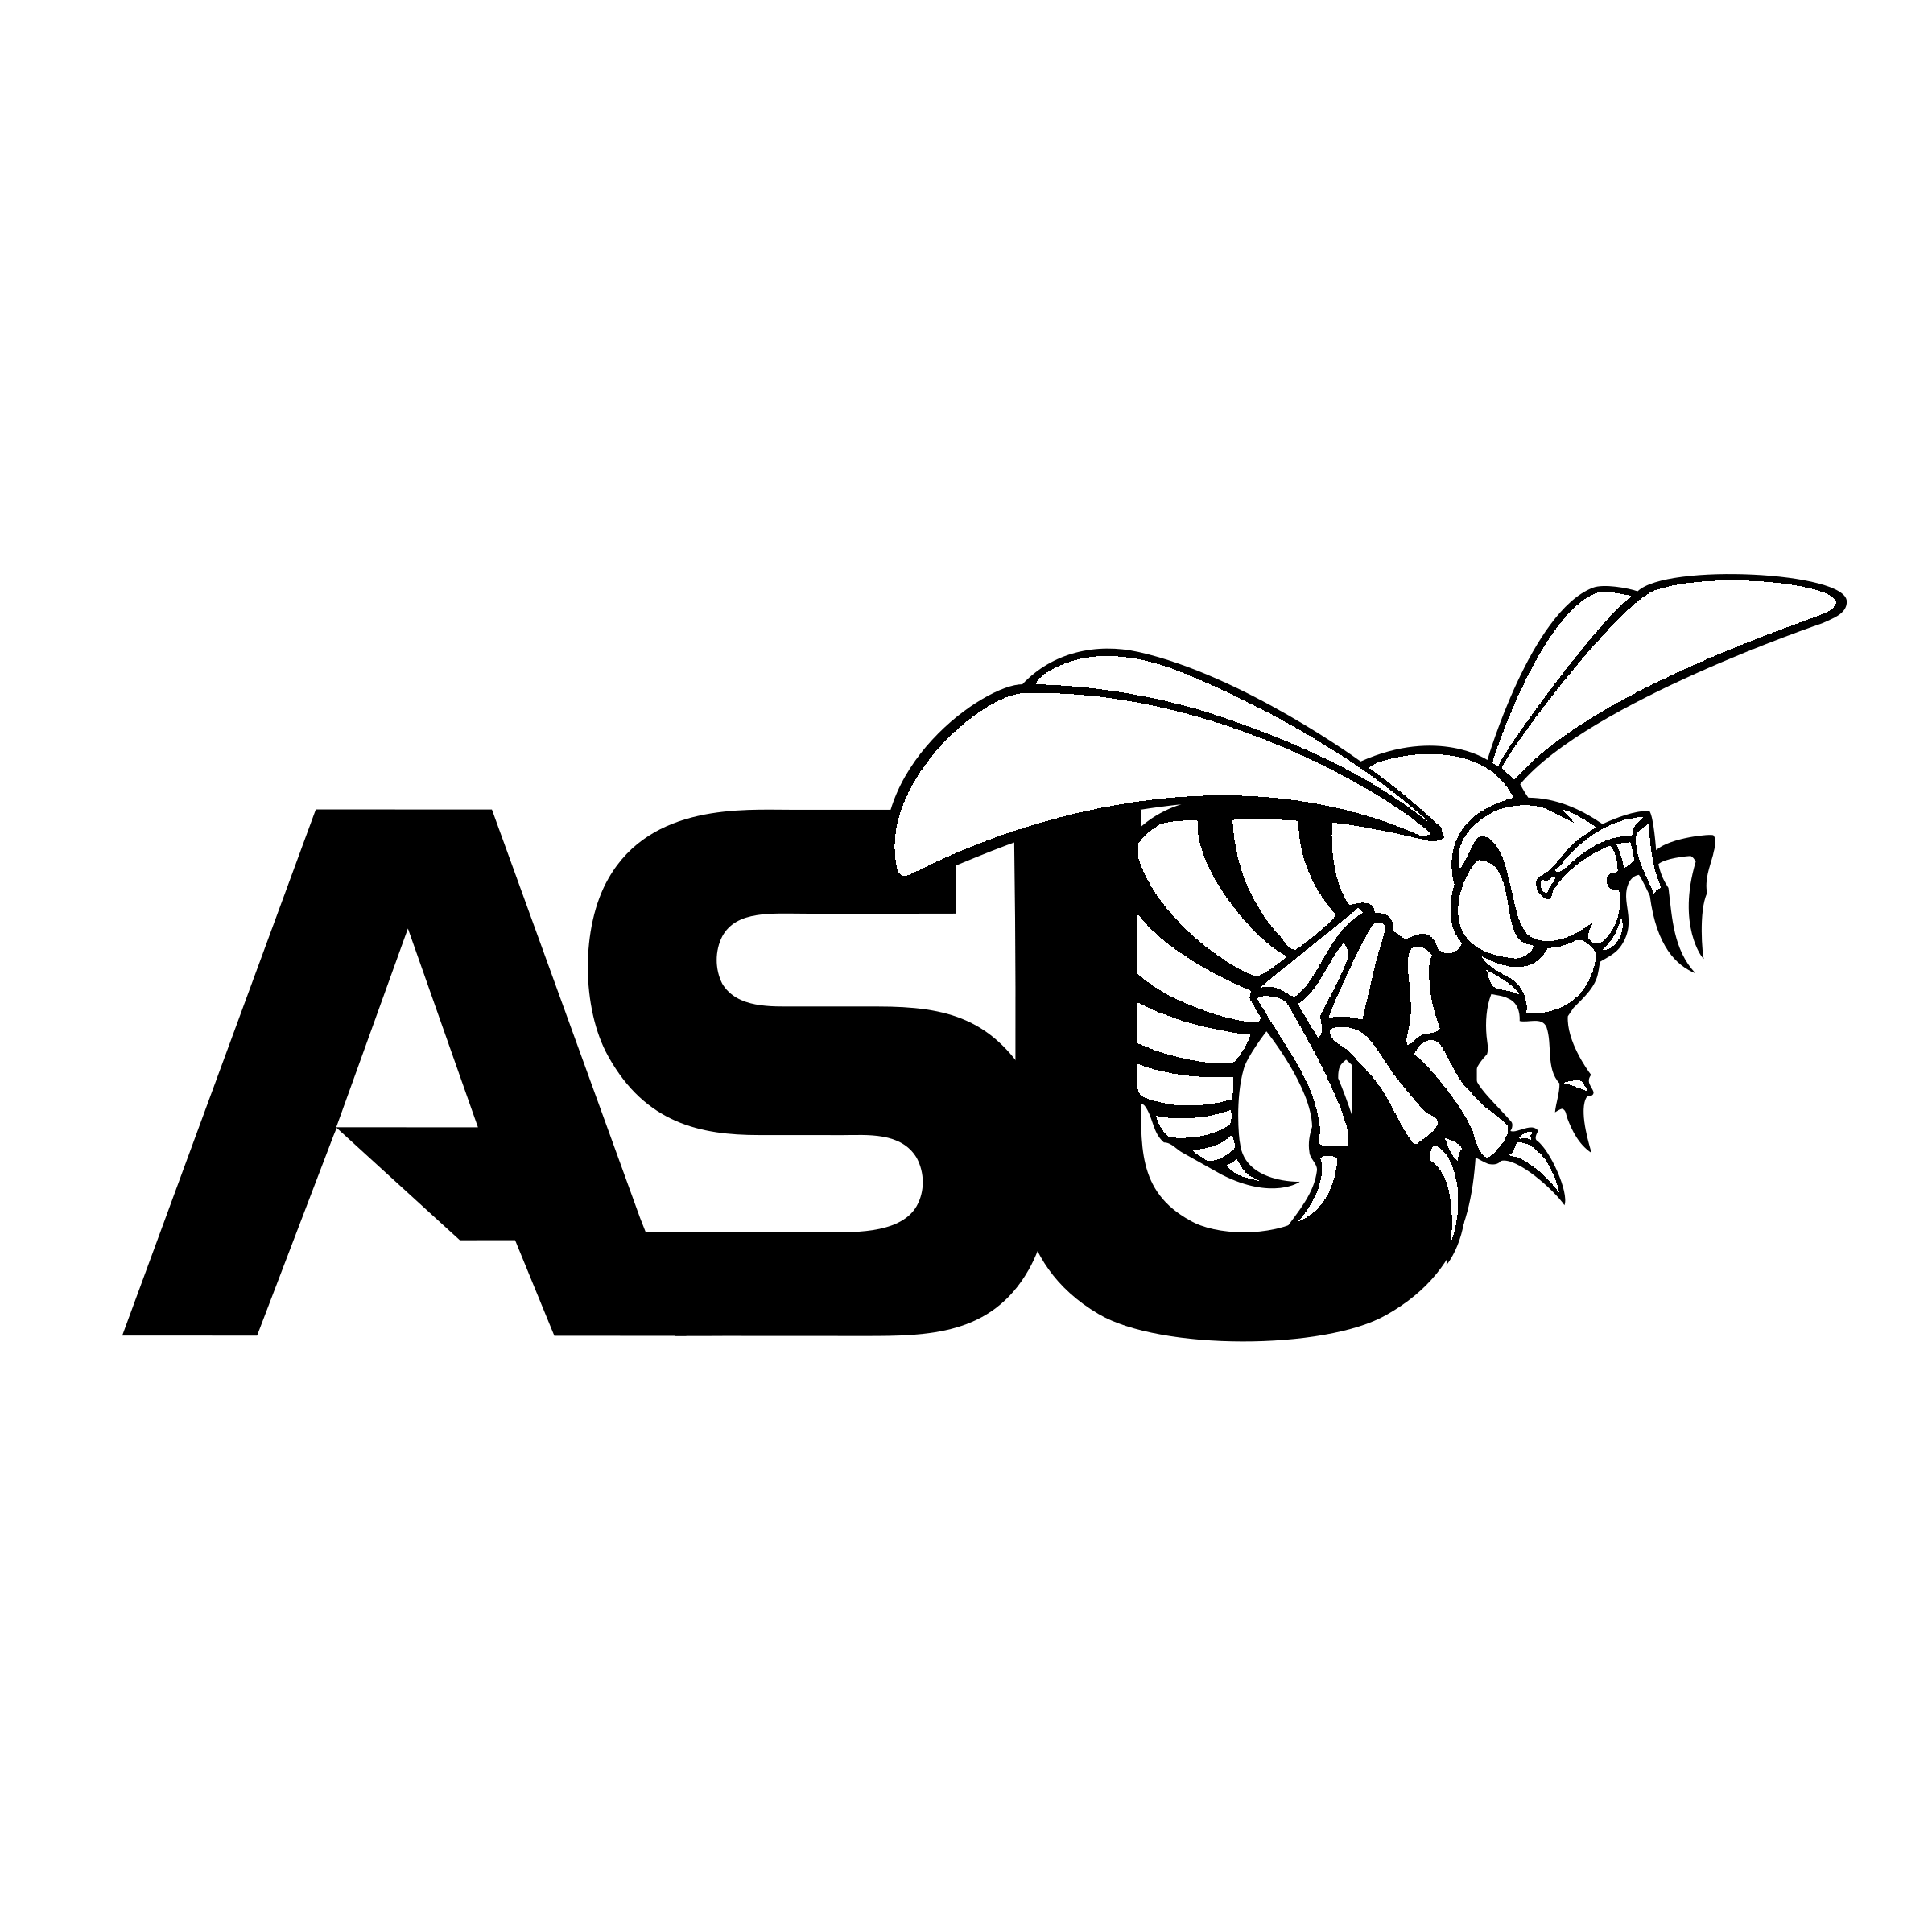 Black and White Alabama Logo - Alabama State Hornets Logo PNG Transparent & SVG Vector